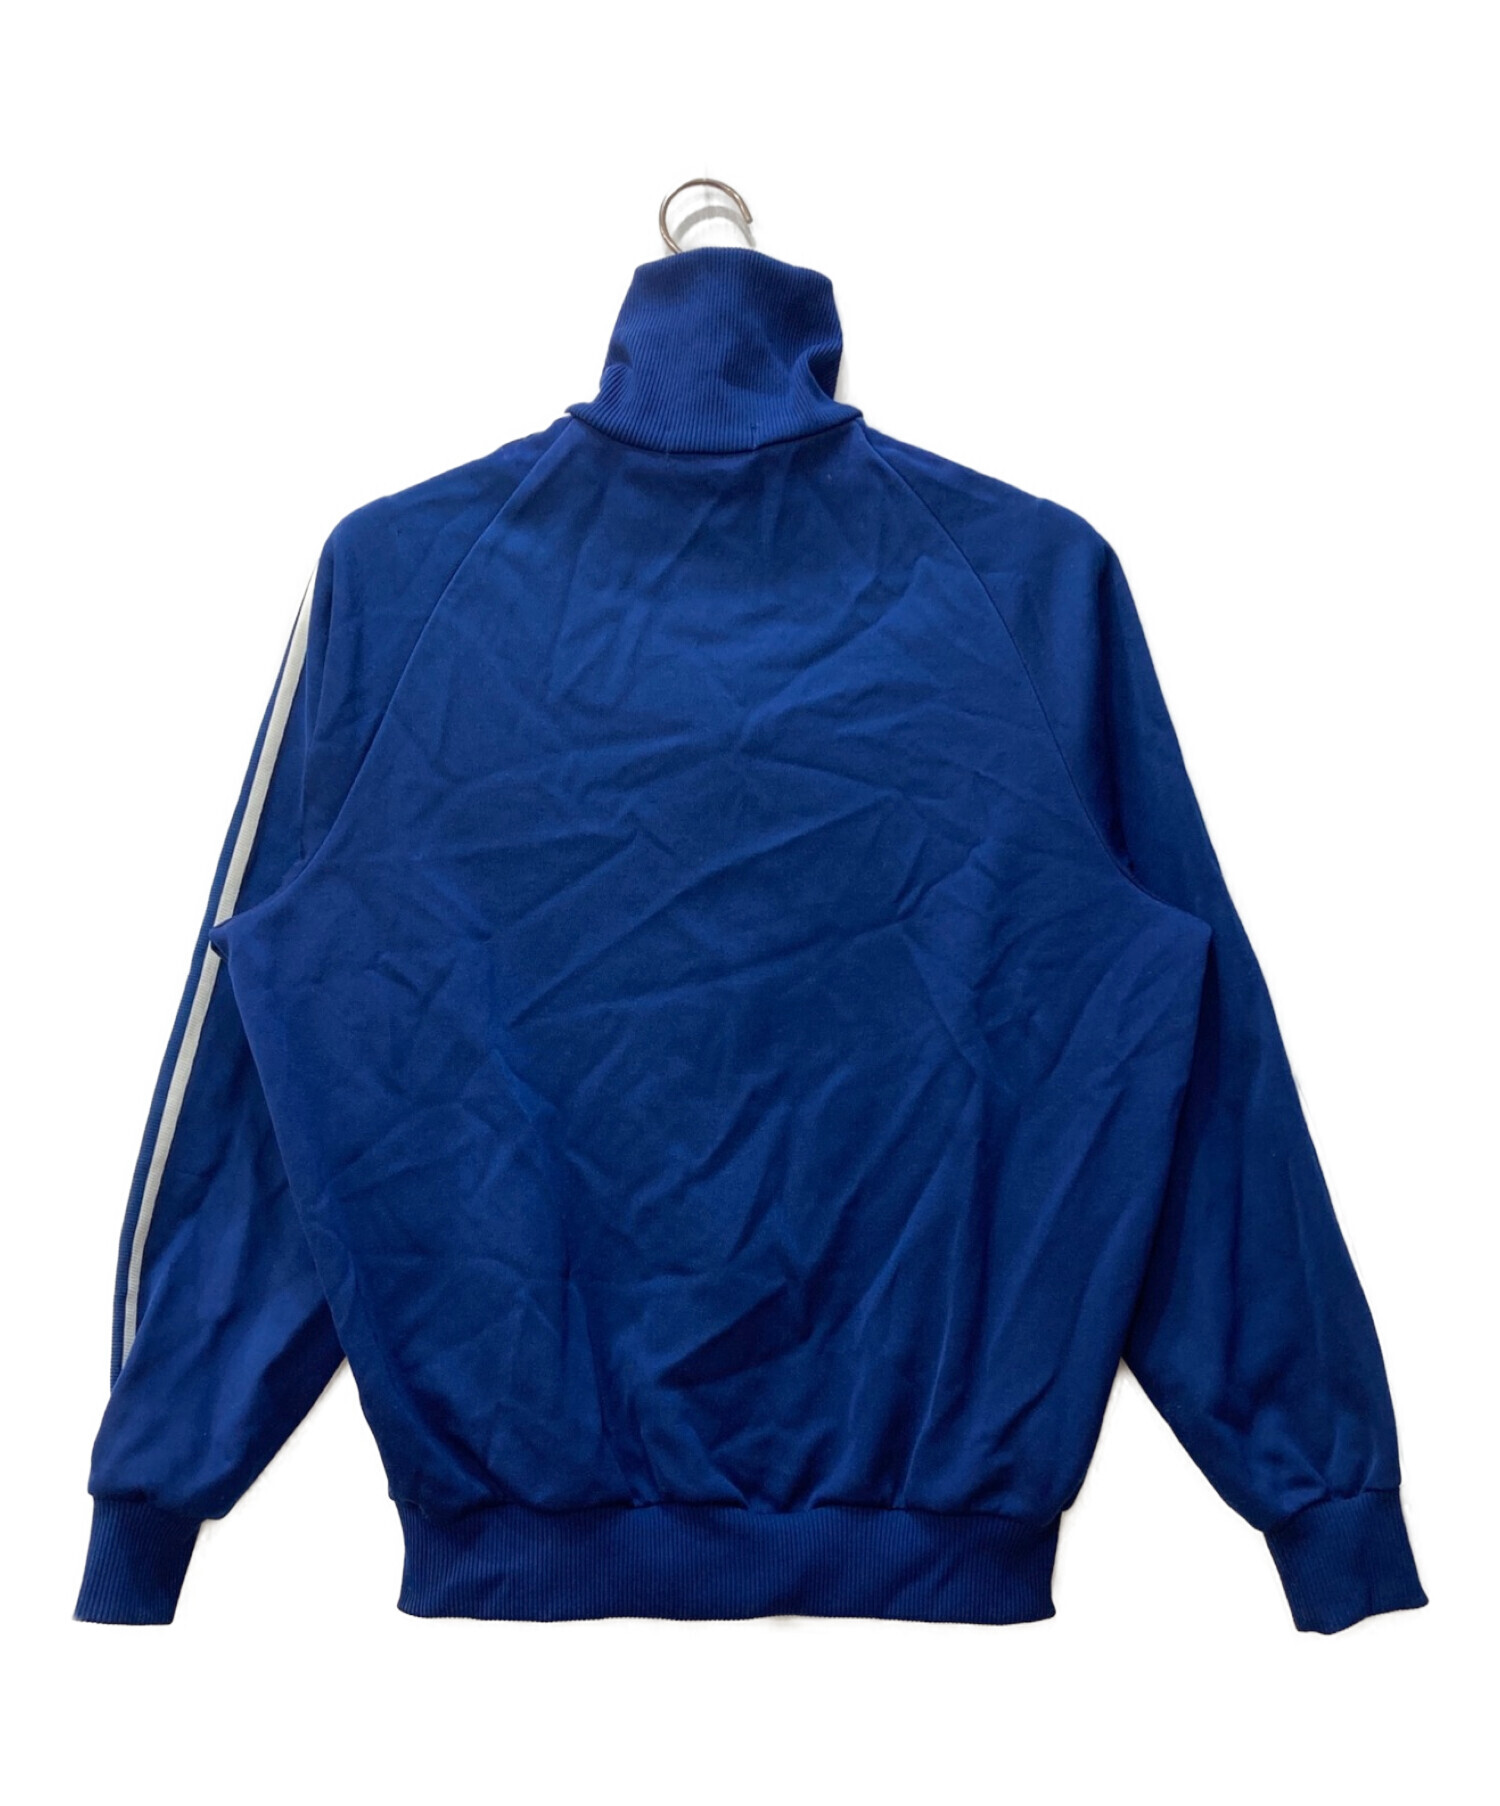 adidas (アディダス) トラックジャケット デサント 80s ブルー サイズ:6